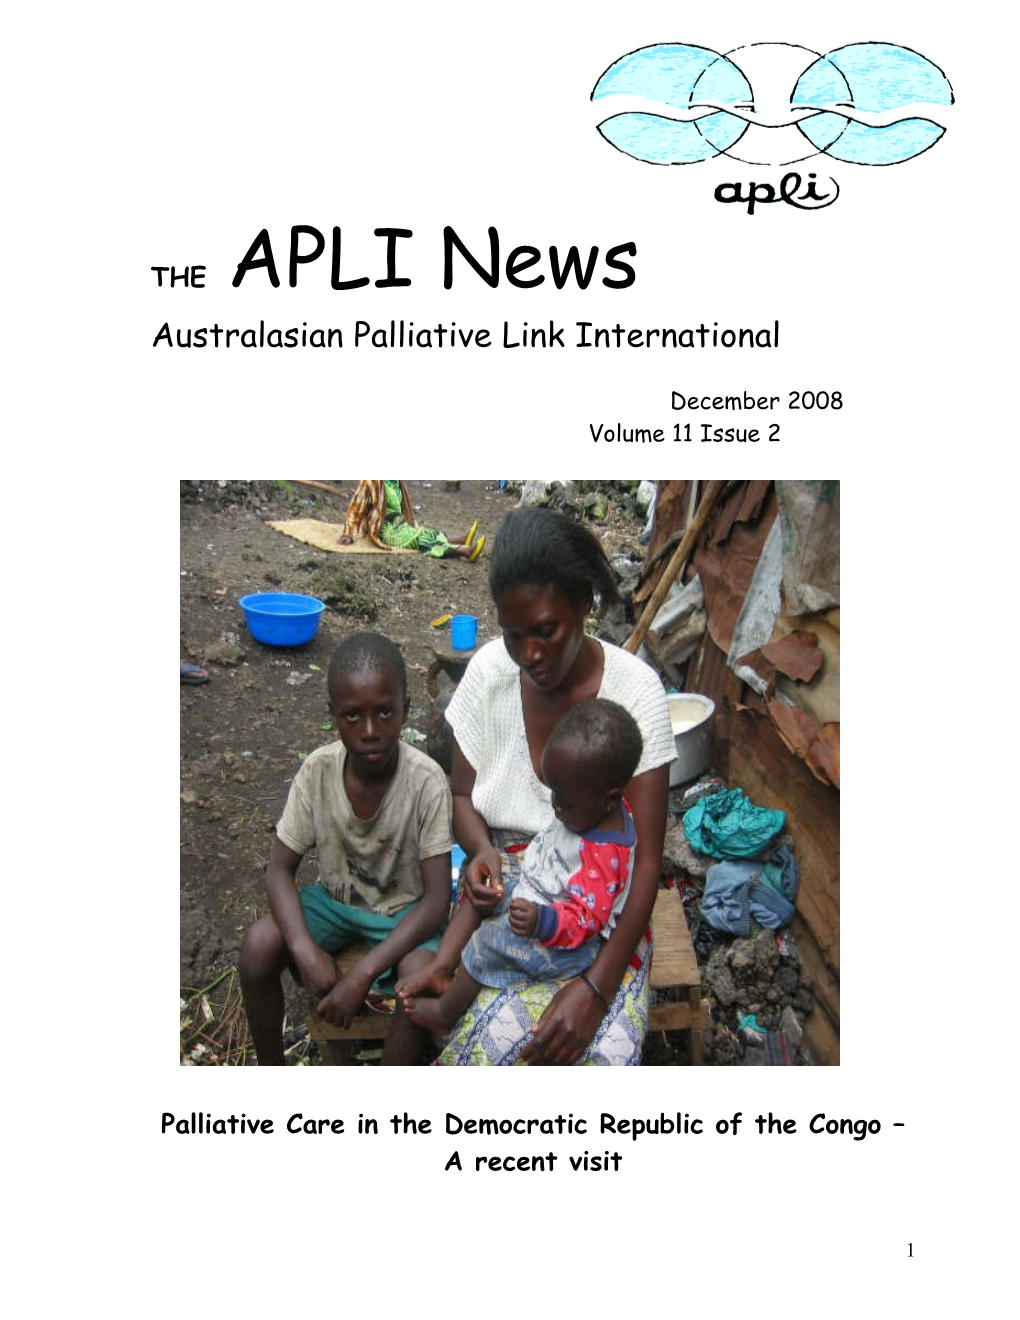 Palliative Care in the Democratic Republic of the Congo